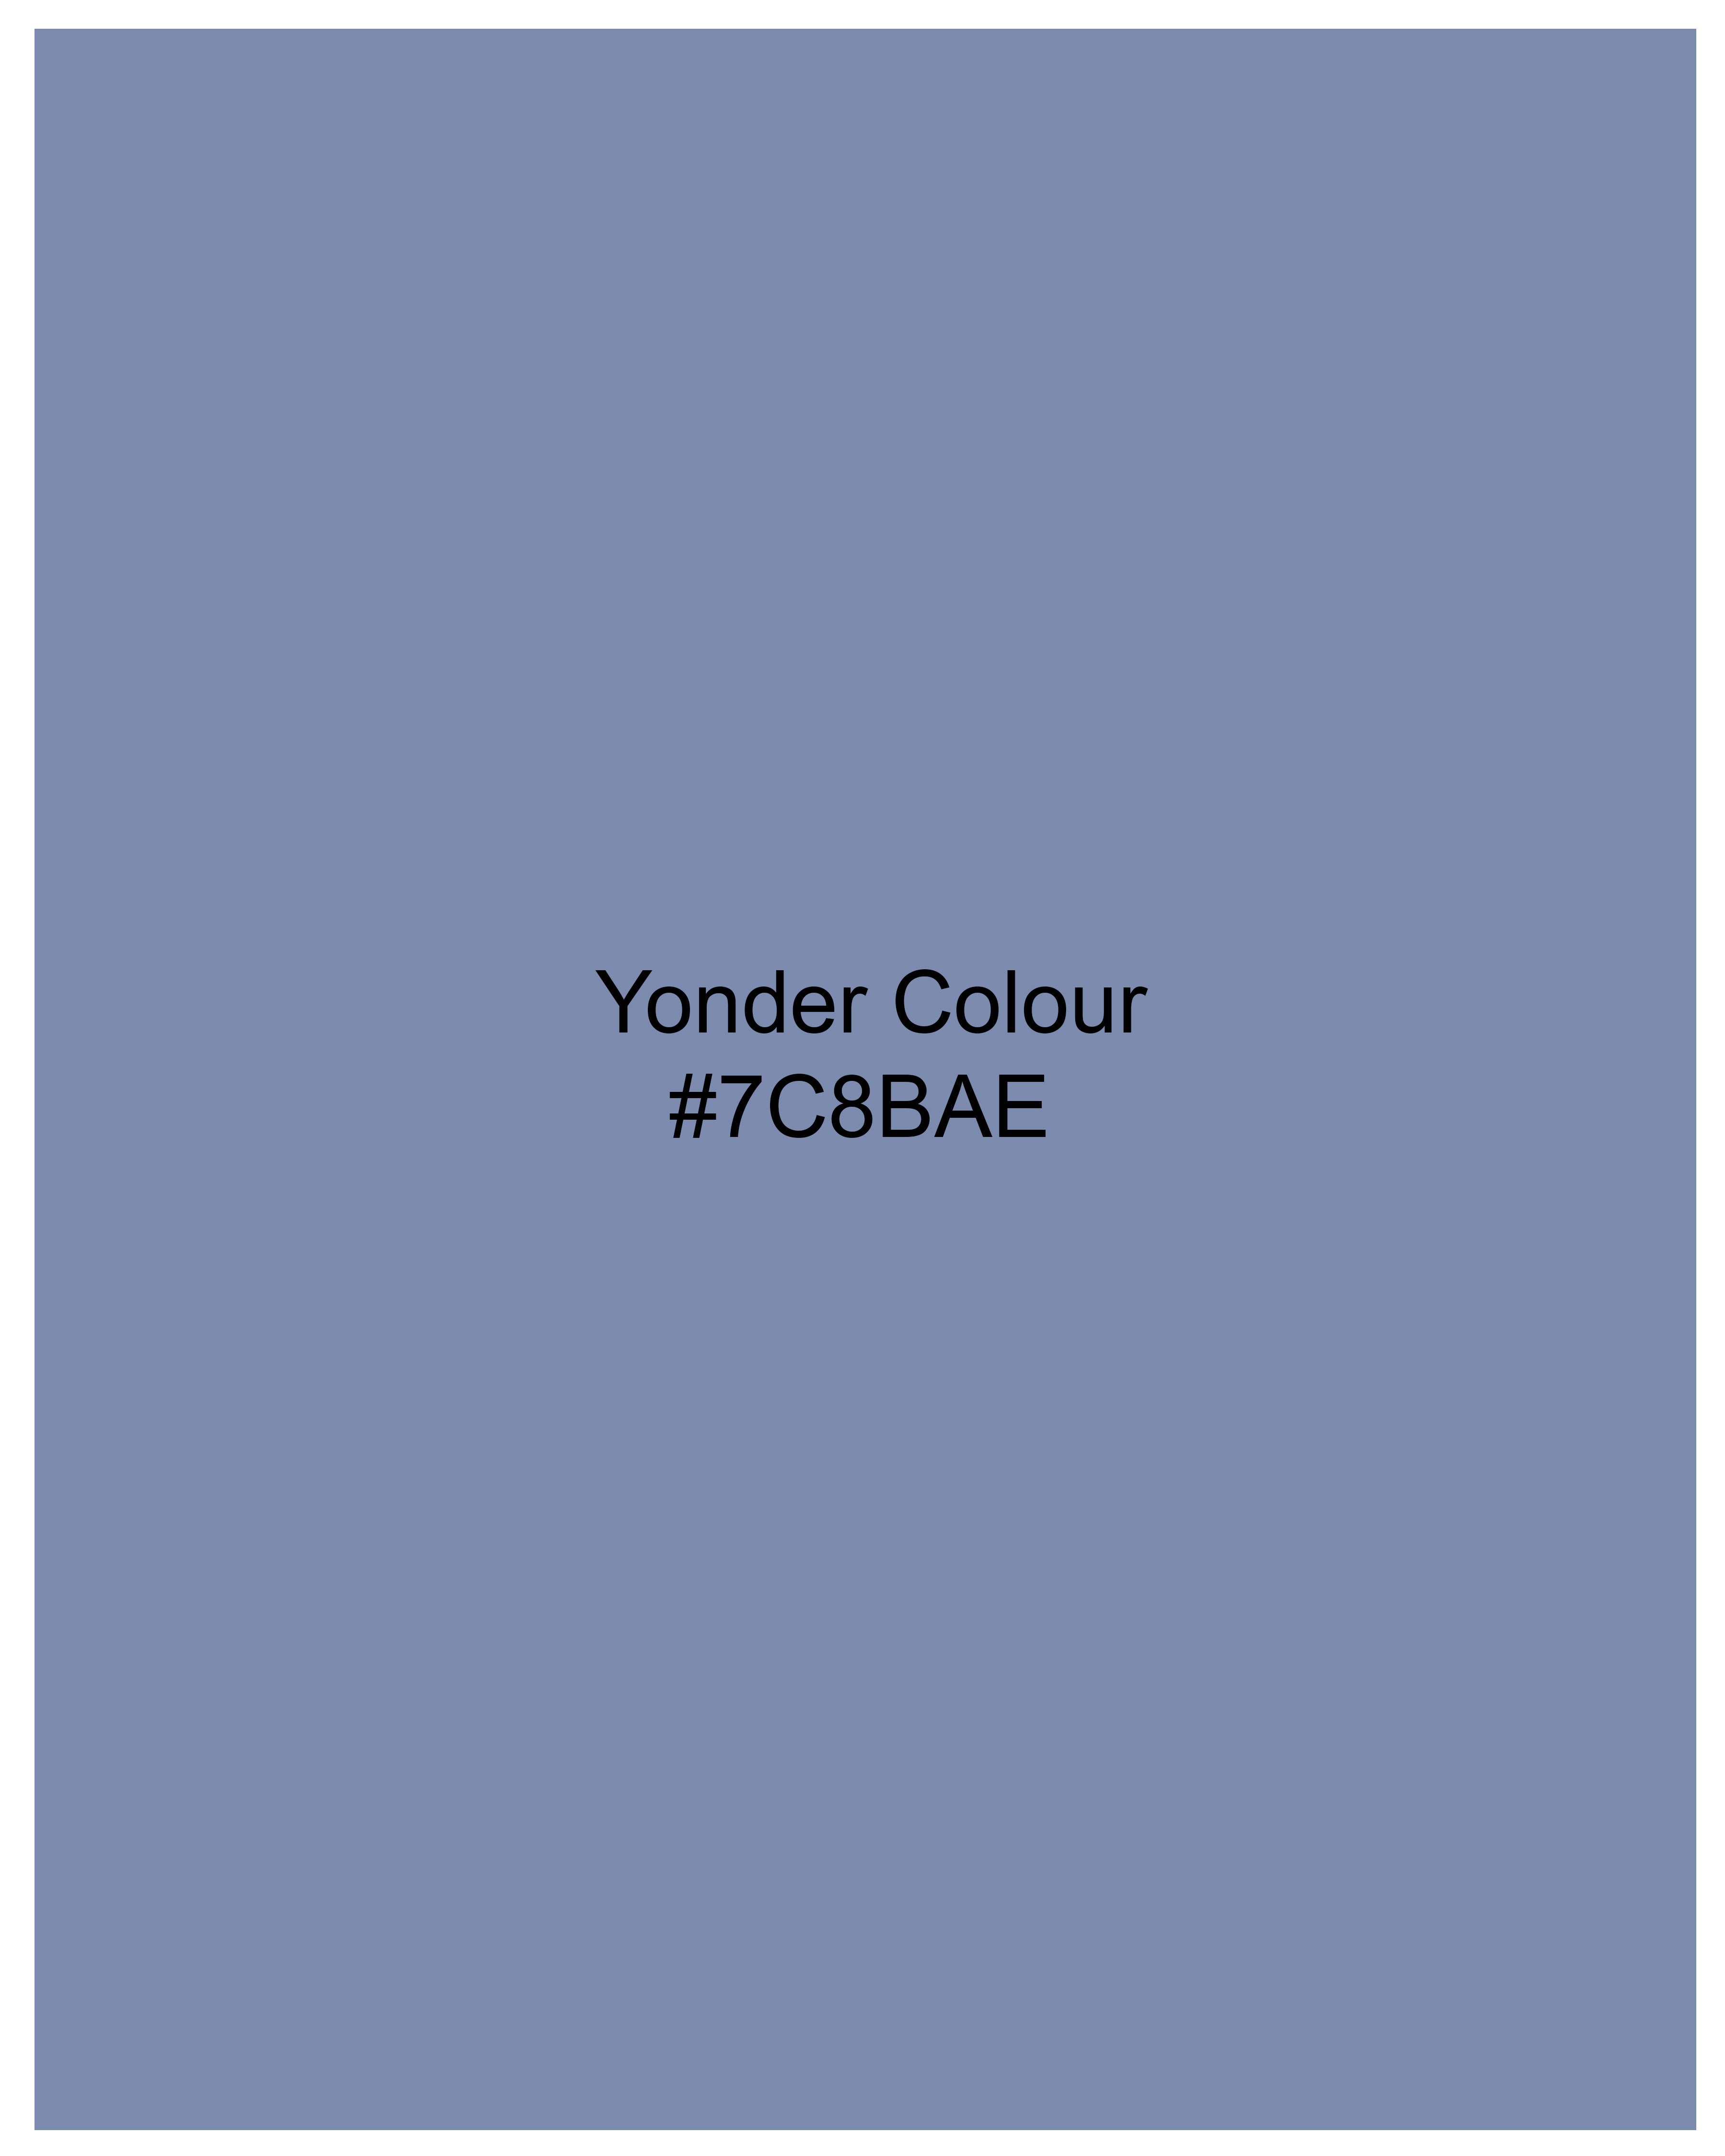 Yonder Blue Acid Wash Stretchable Denim J181-32, J181-34, J181-36, J181-38, J181-40